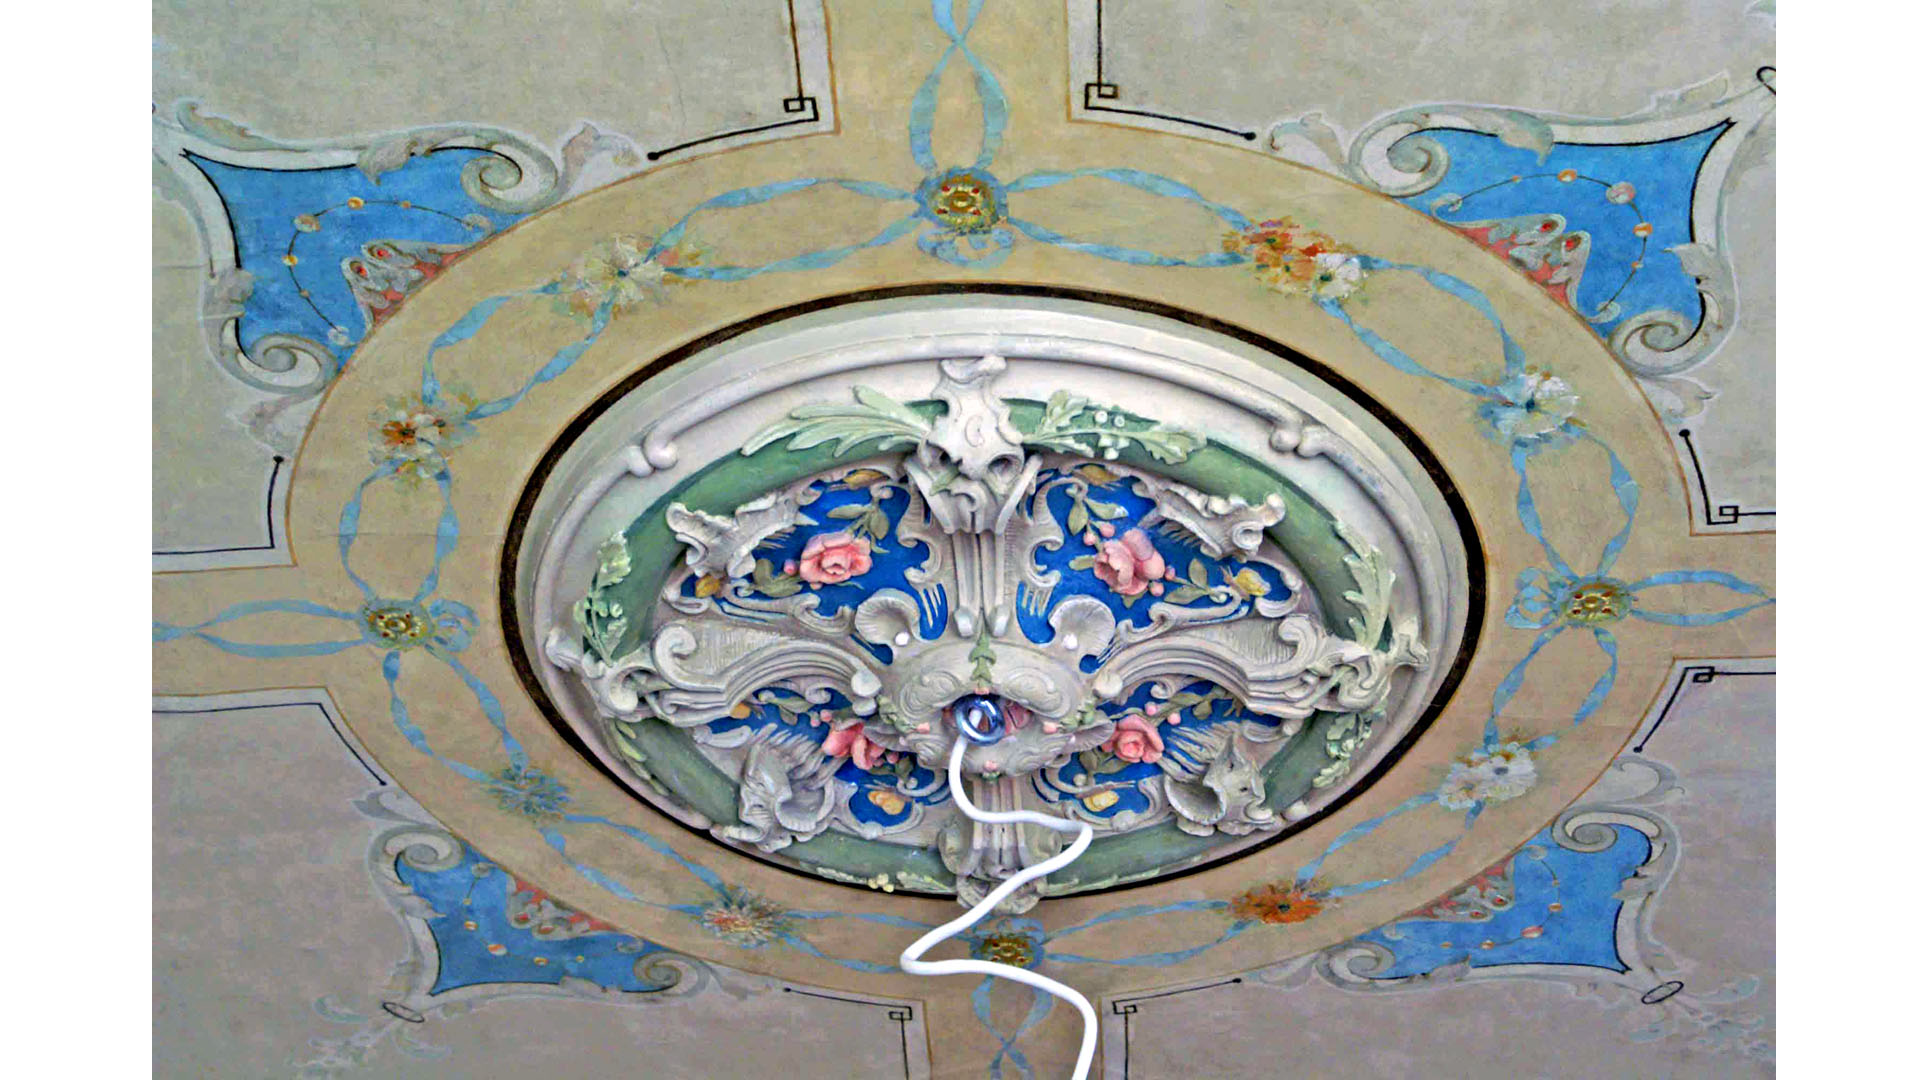 Wnętrza willa secesja art-nouveau Proart projekt realizacja wystrój dekoracja detal architektura Anna Rostkowska Dominik Rostkowski